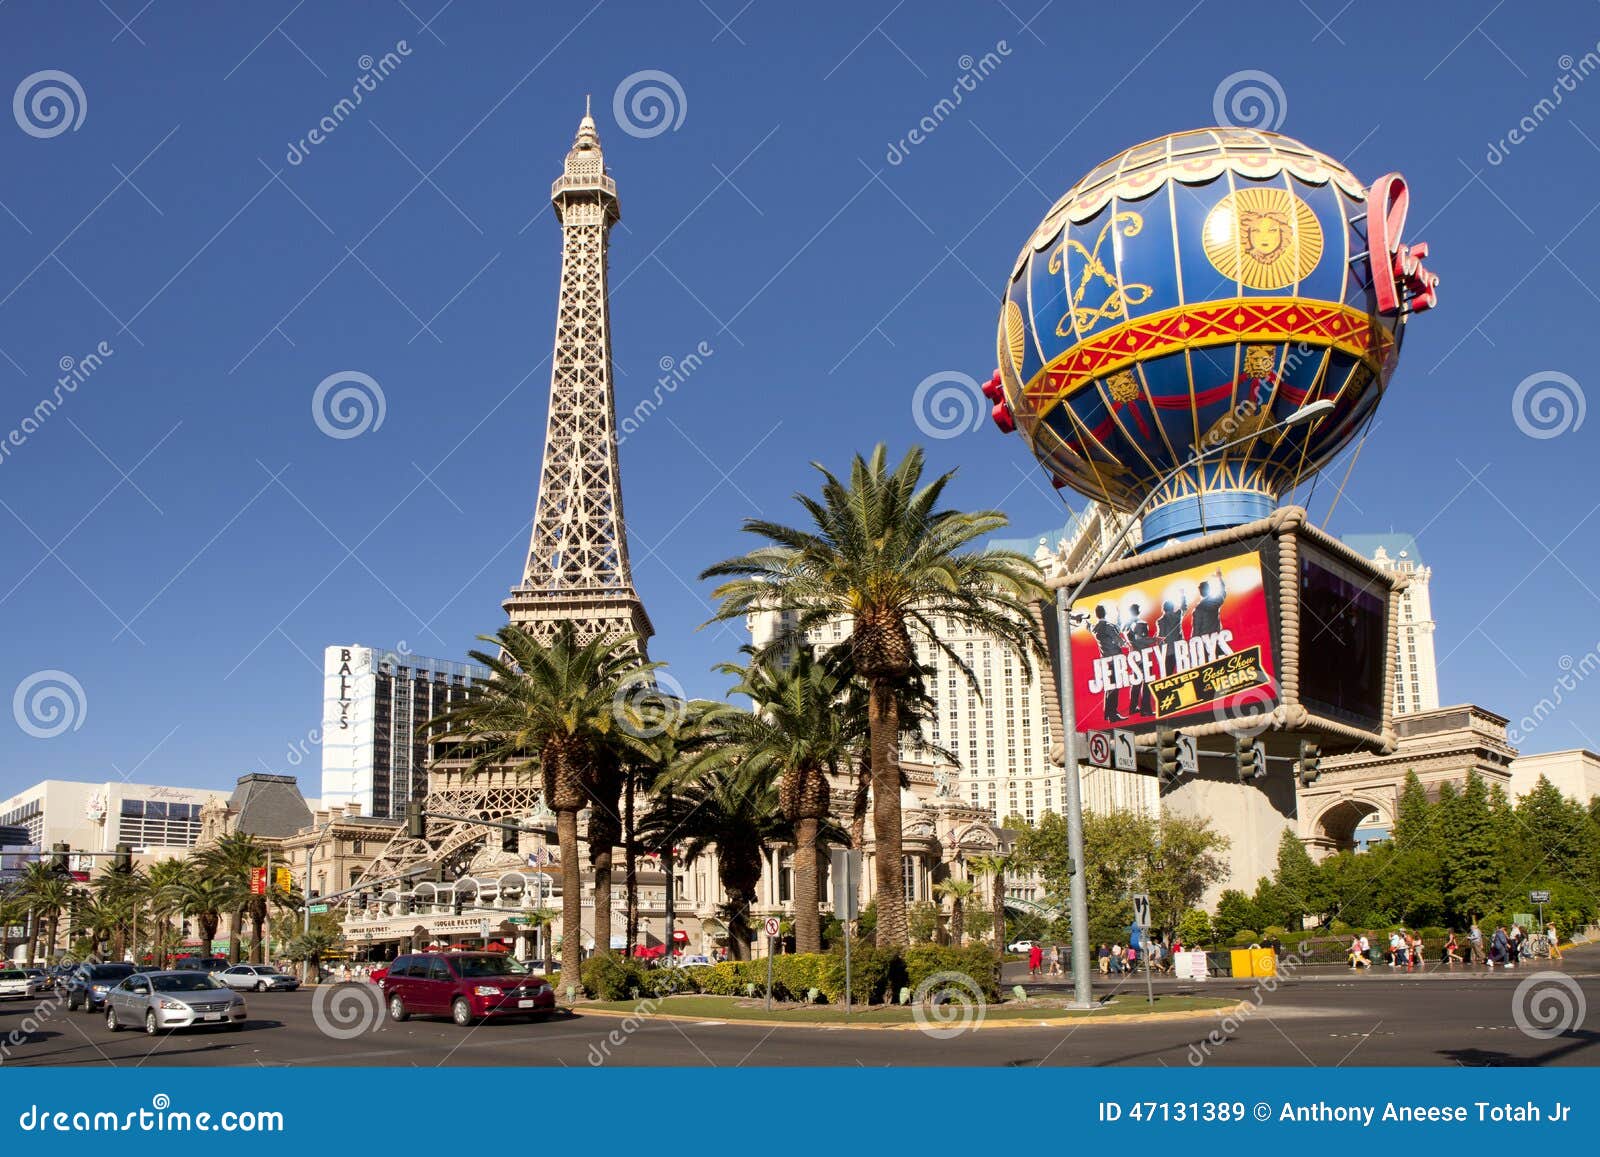 Paris Hotel and Casino in Las Vegas, Nevada Editorial Stock Image